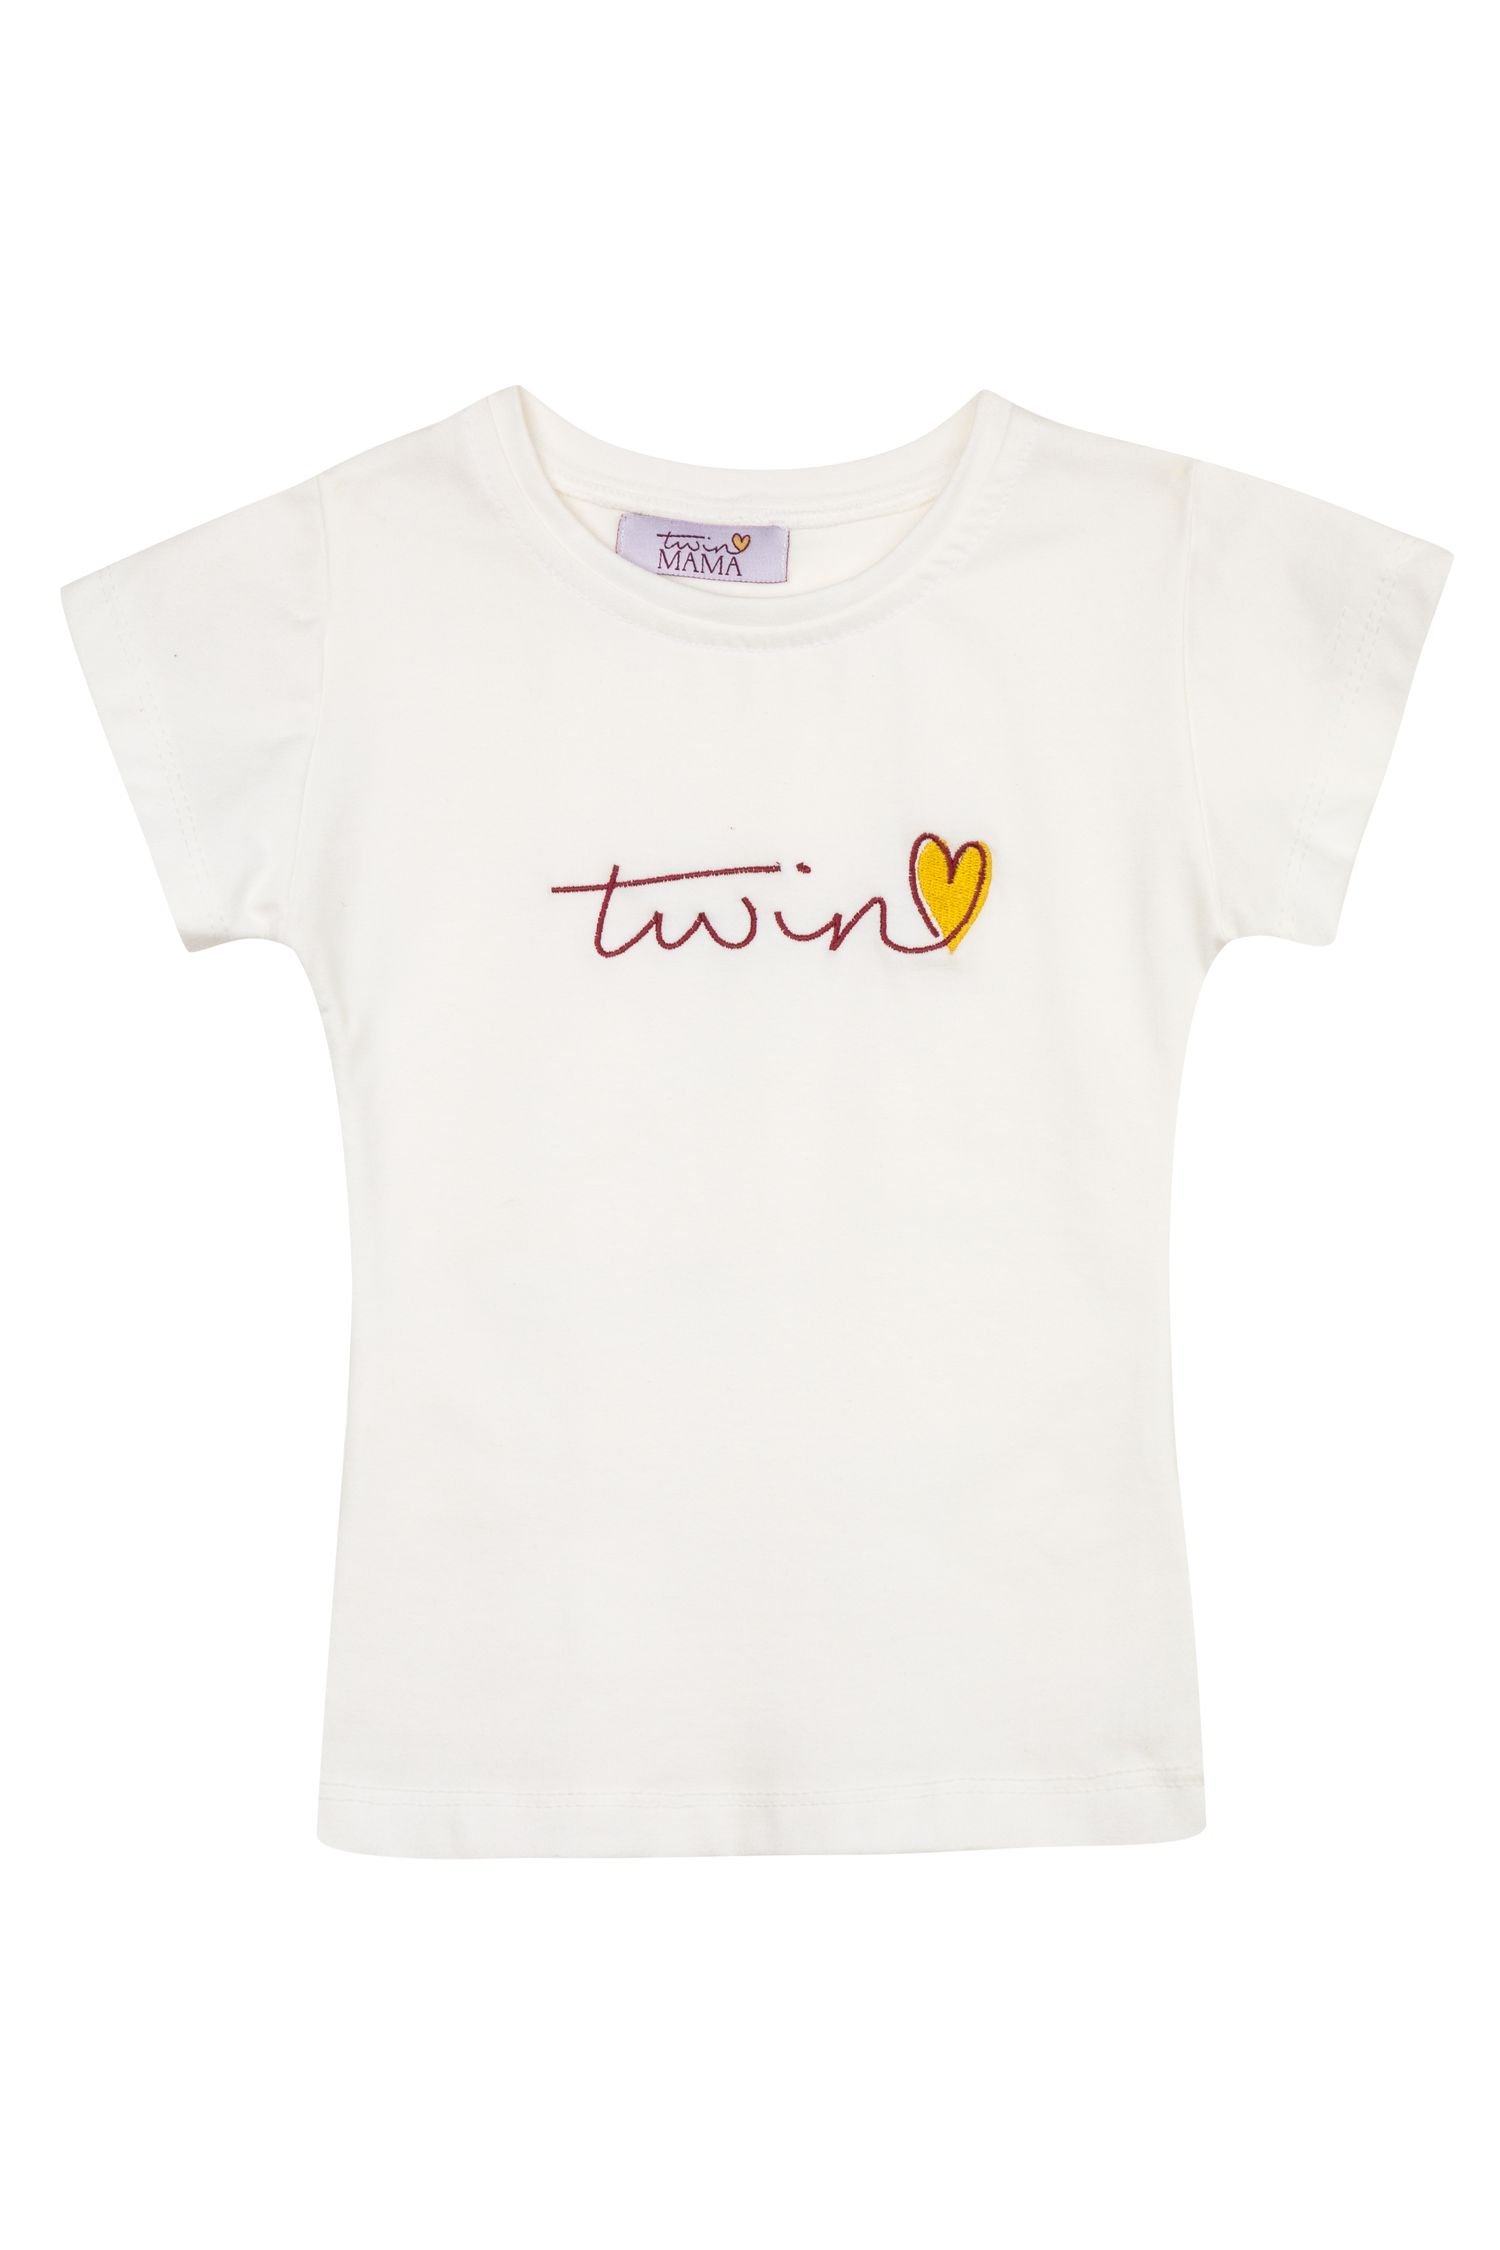 twin-t-shirt-_r